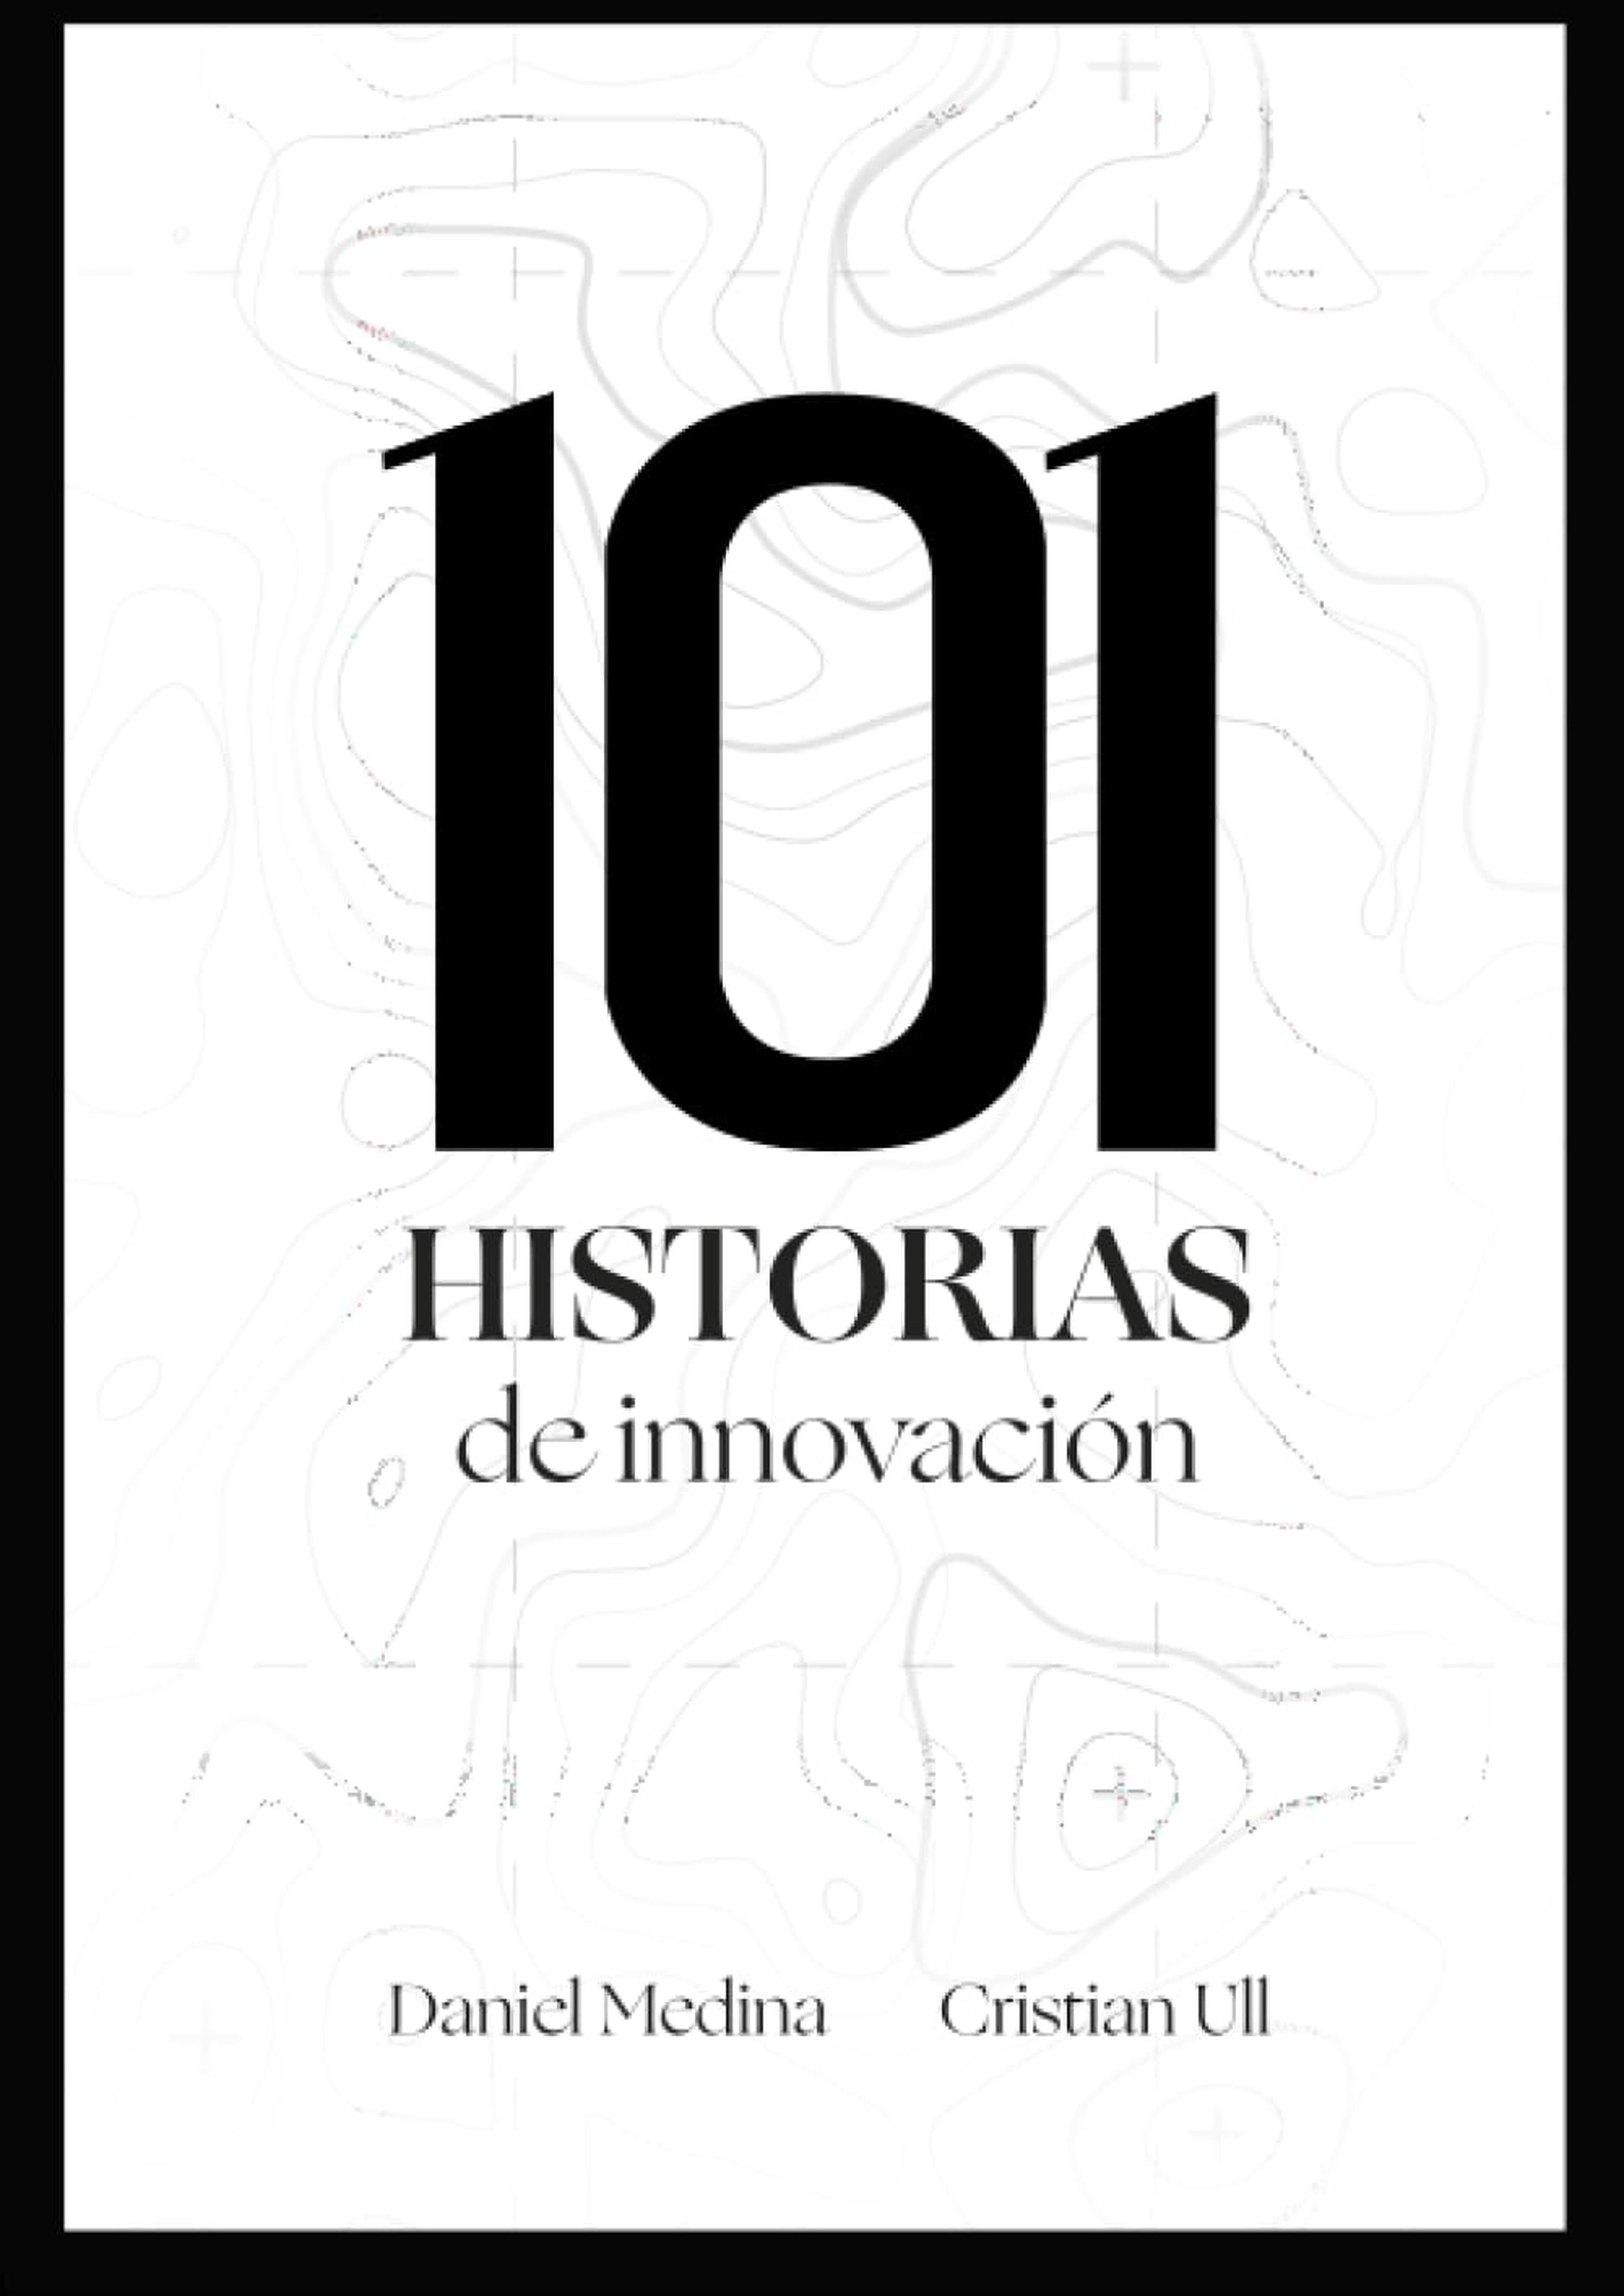 Portada del 101 historias de innovación, el libro de Cristian Ull y Daniel Medina.